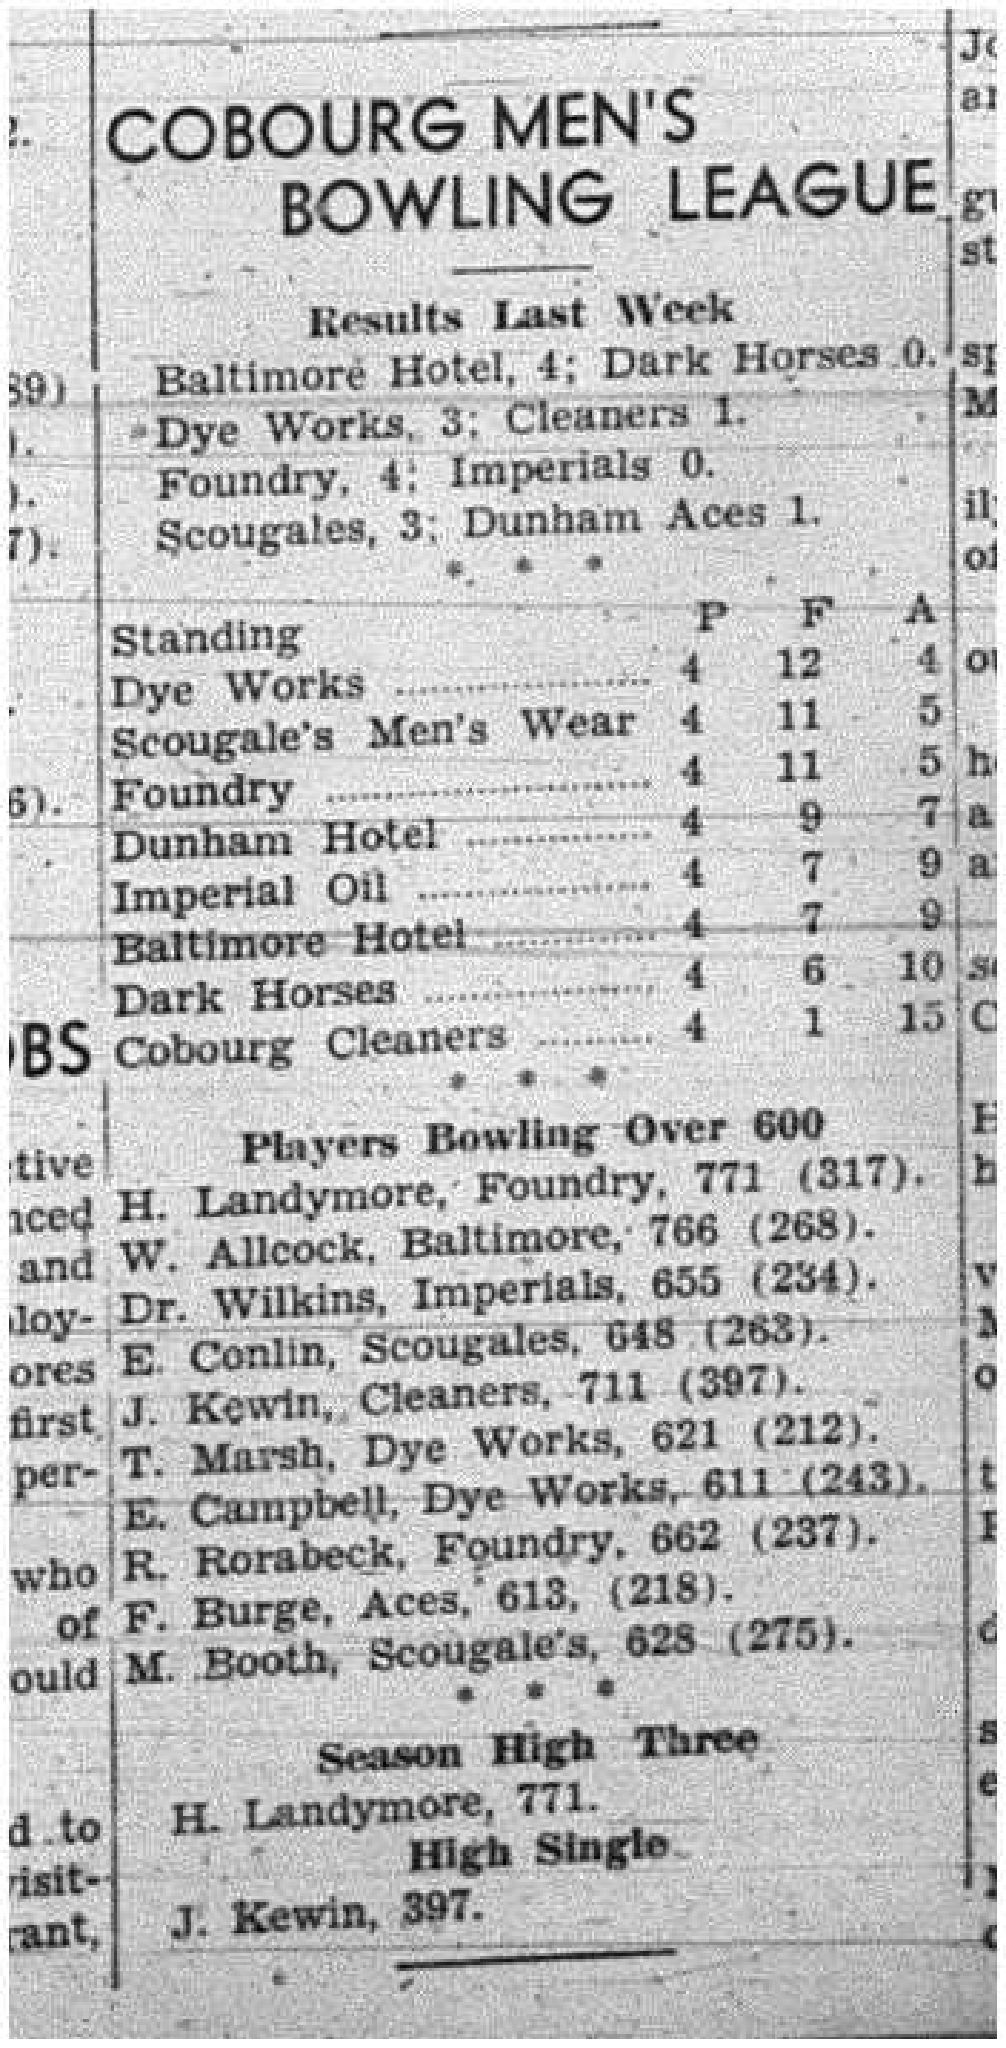 1943-12-02 Bowling - Men